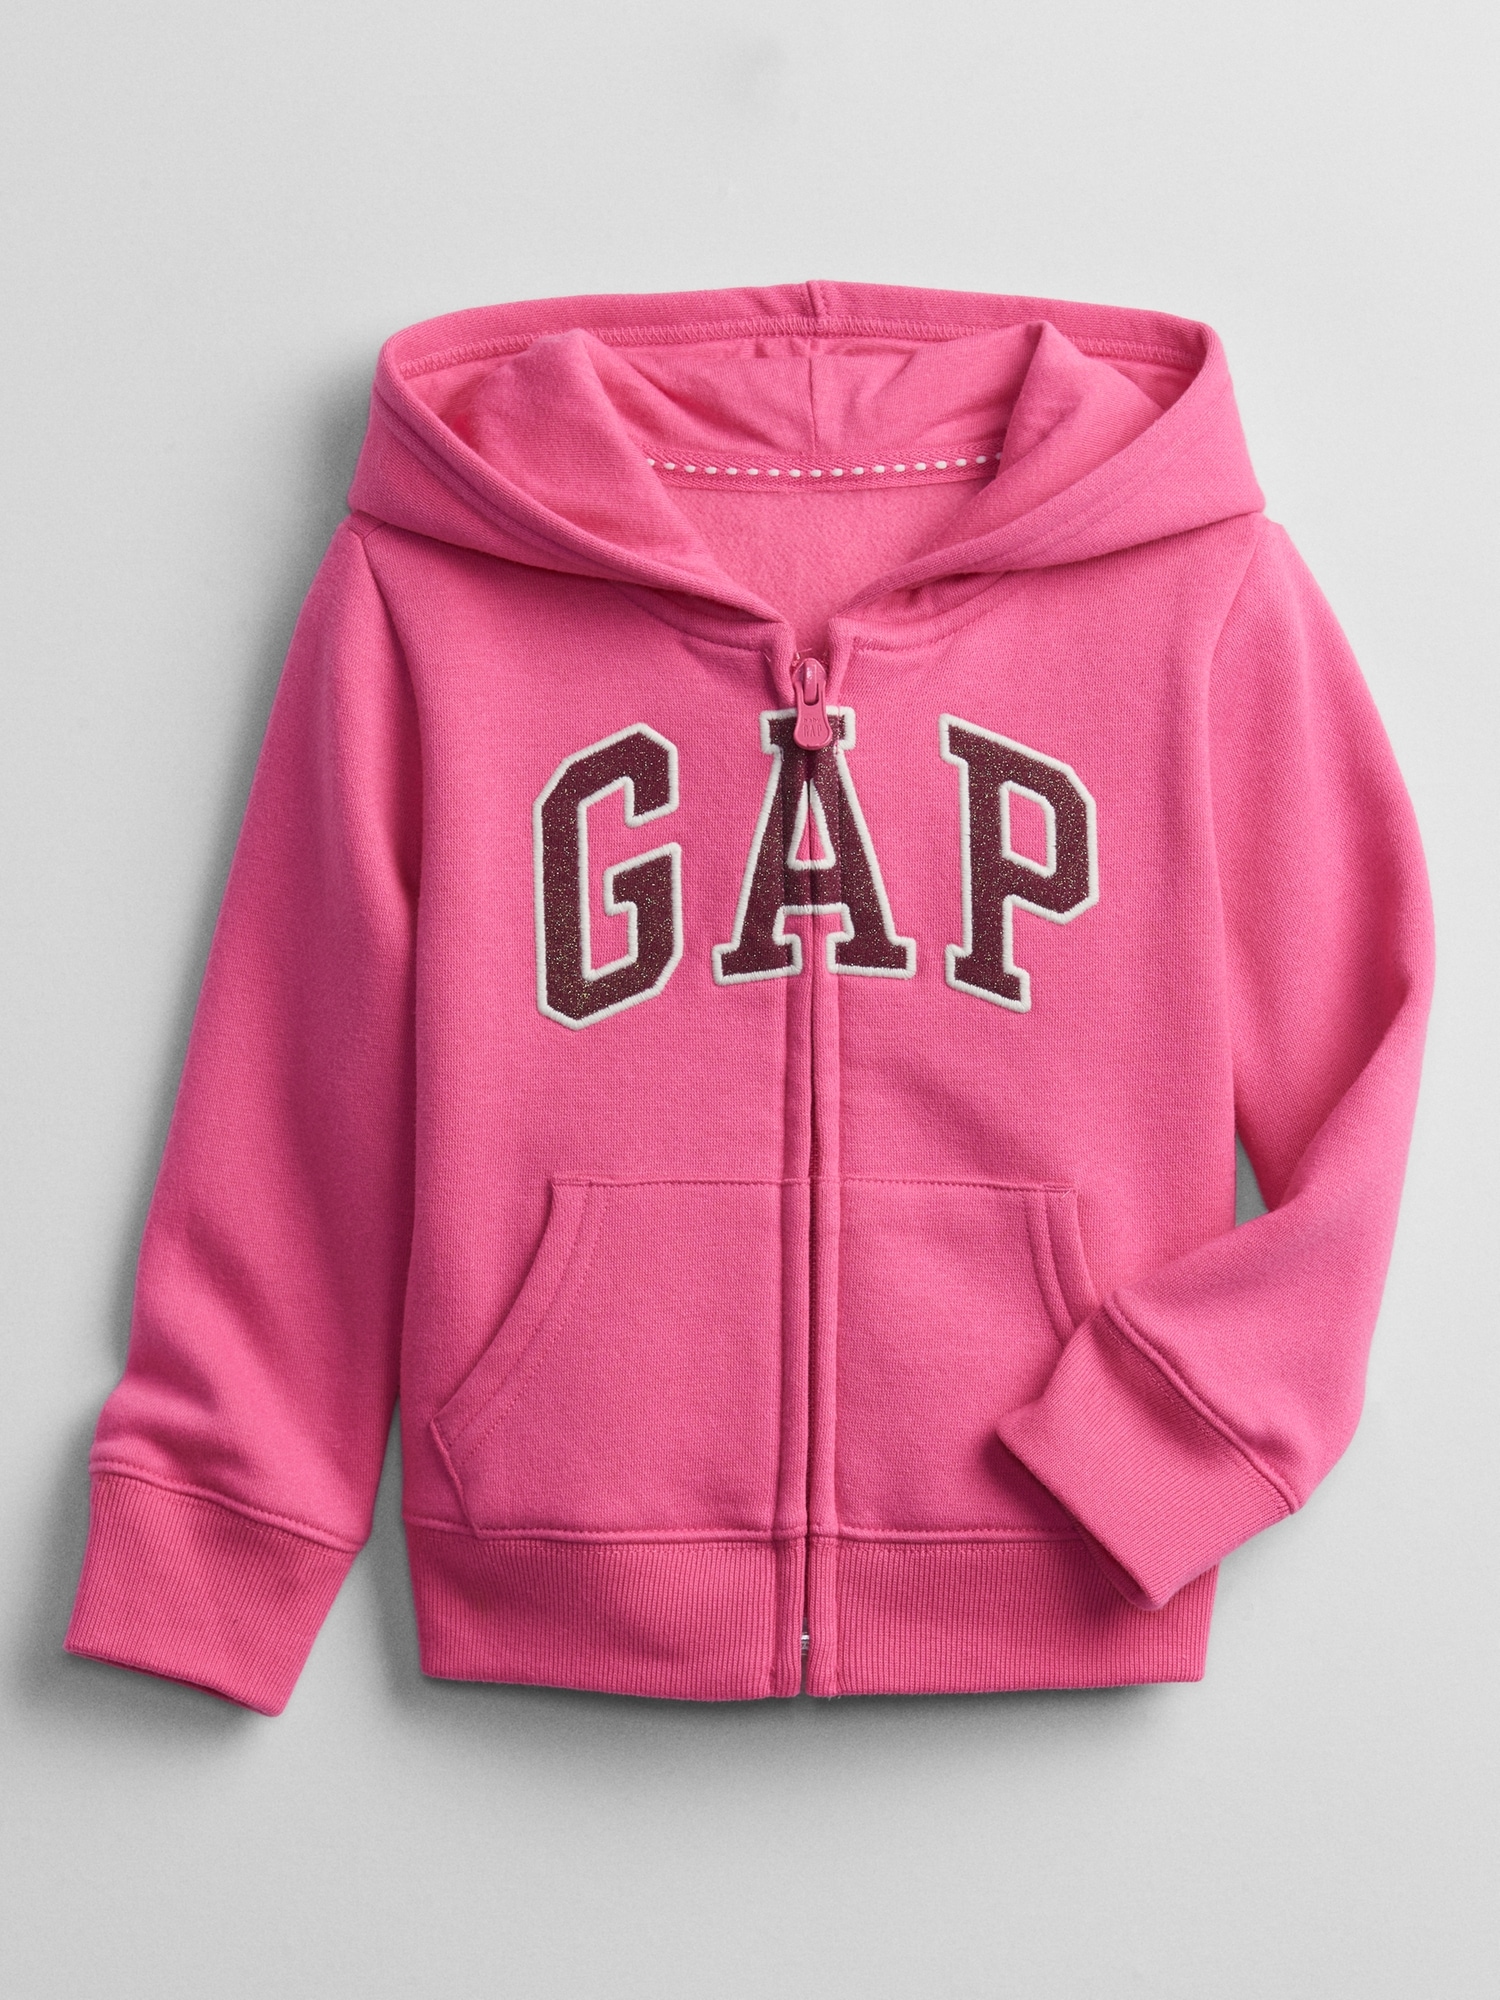 갭 babyGap Gap Logo Hoodie